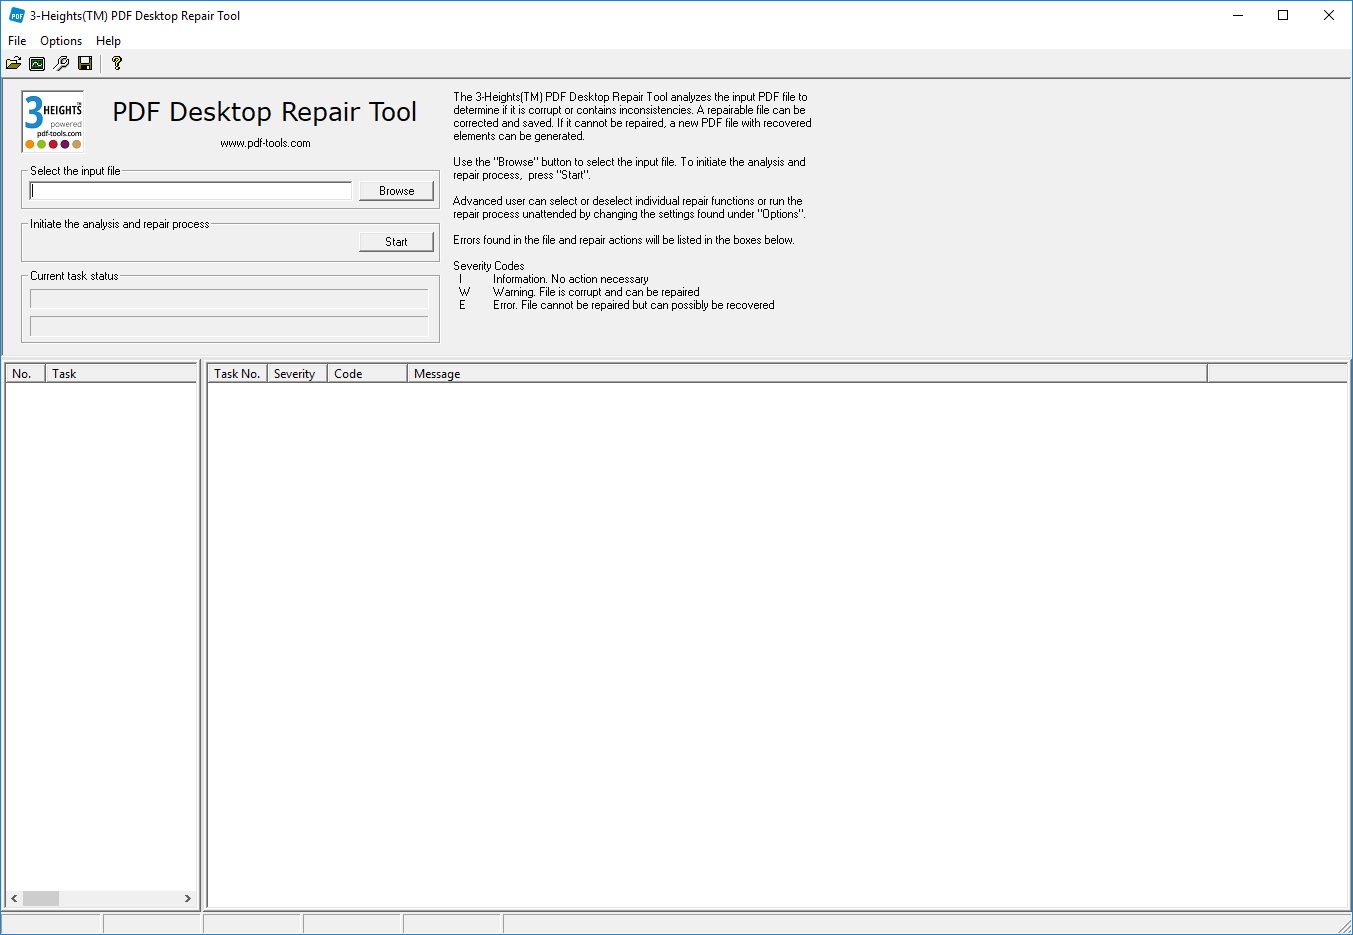 3-Heights PDF Desktop Analysis & Repair Tool 6.27.1.1 free instal